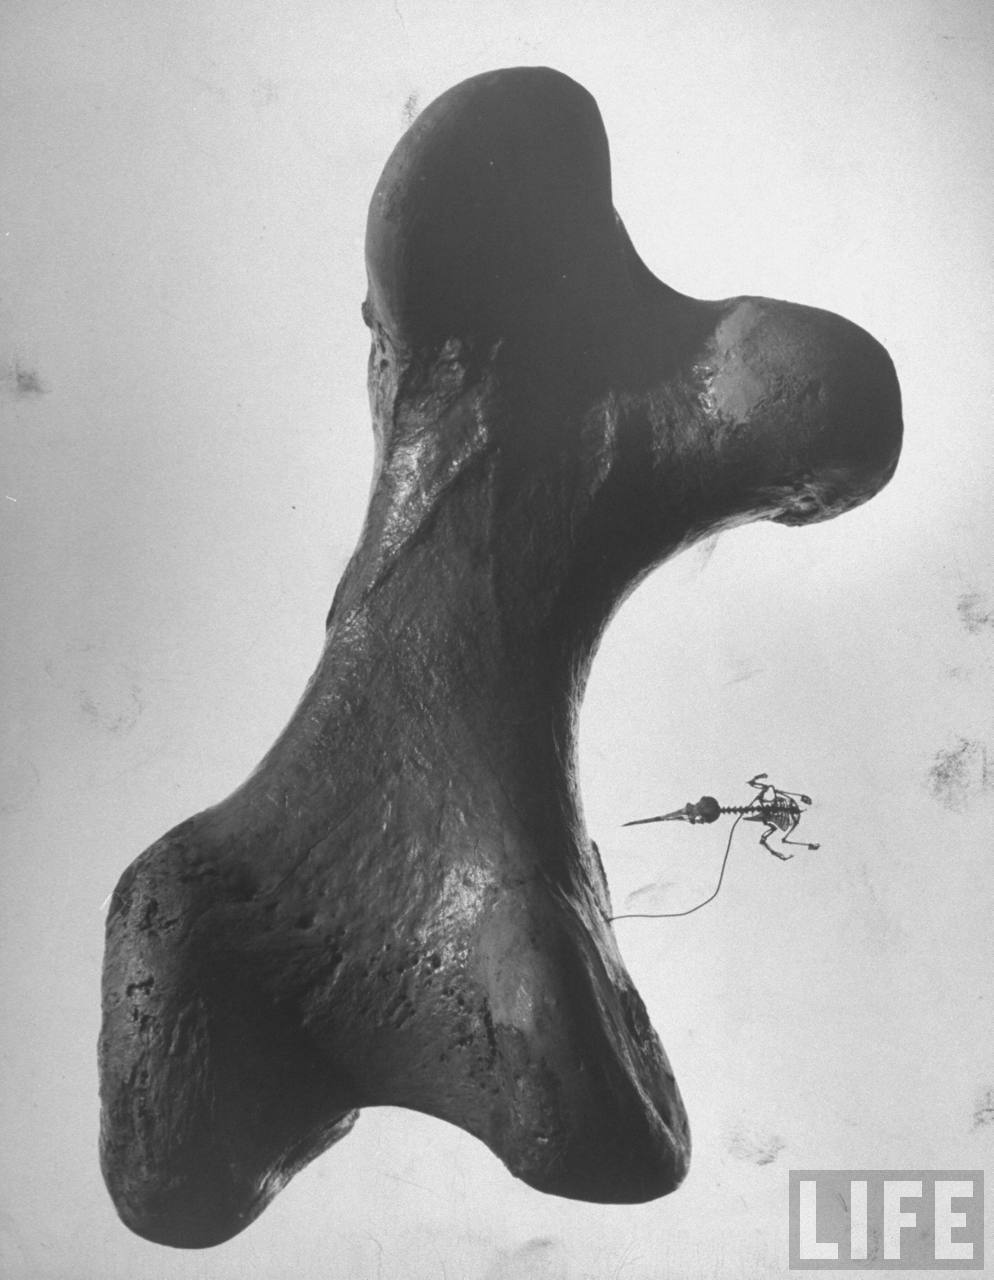 Comparaison du squelette complet d'un colibri et du fémur d'un oiseau-éléphant (Aepyornis, espèce éteinte aujourd'hui